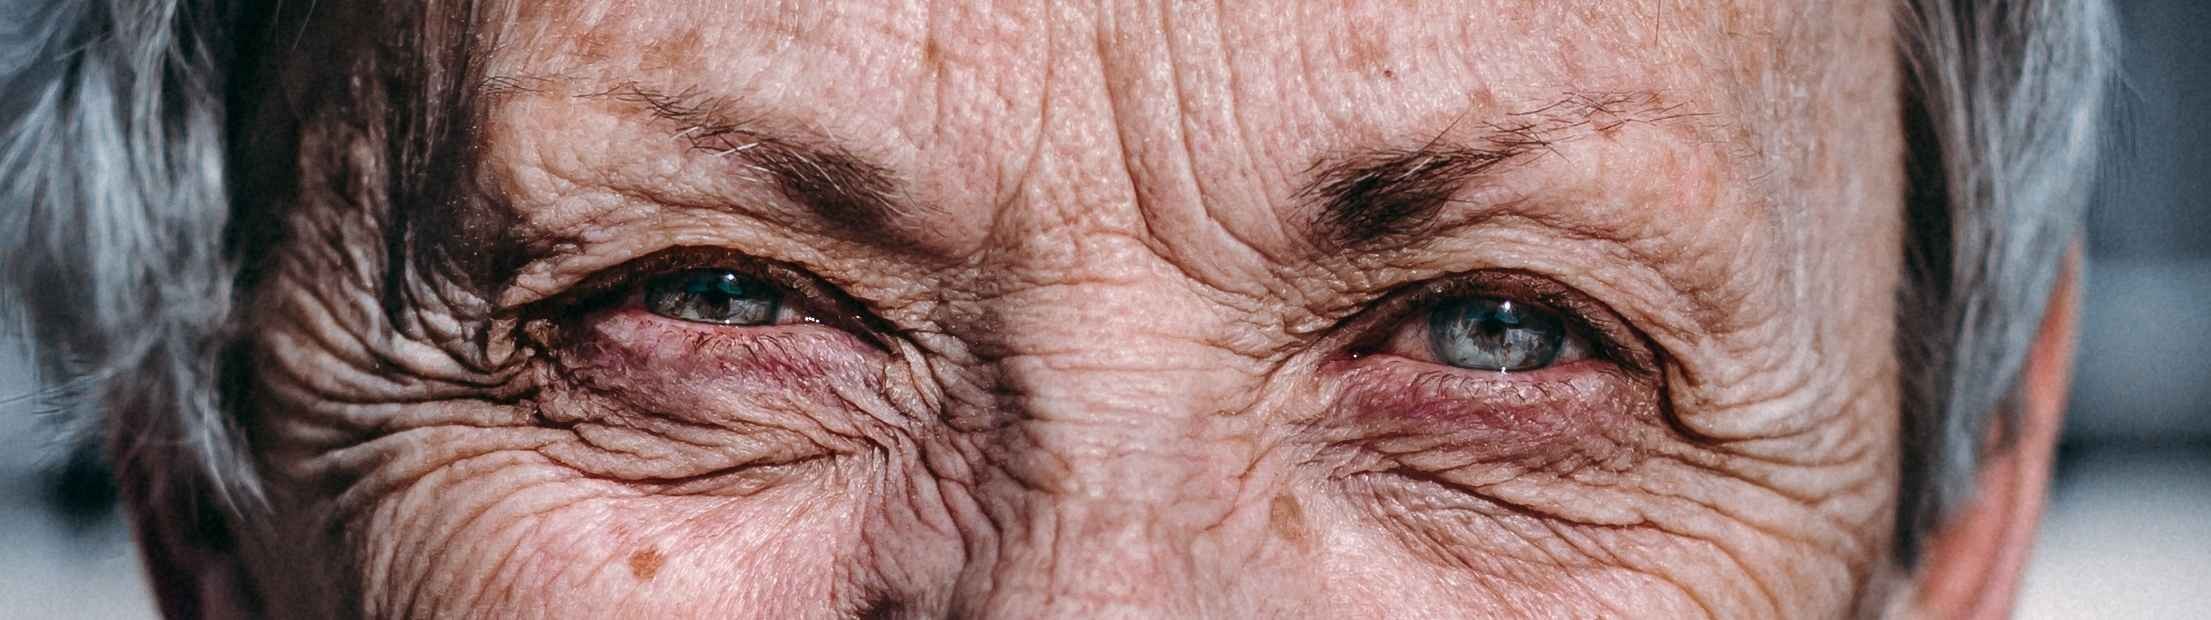 Un nuevo tratamiento contra la degeneración macular asociada a la edad